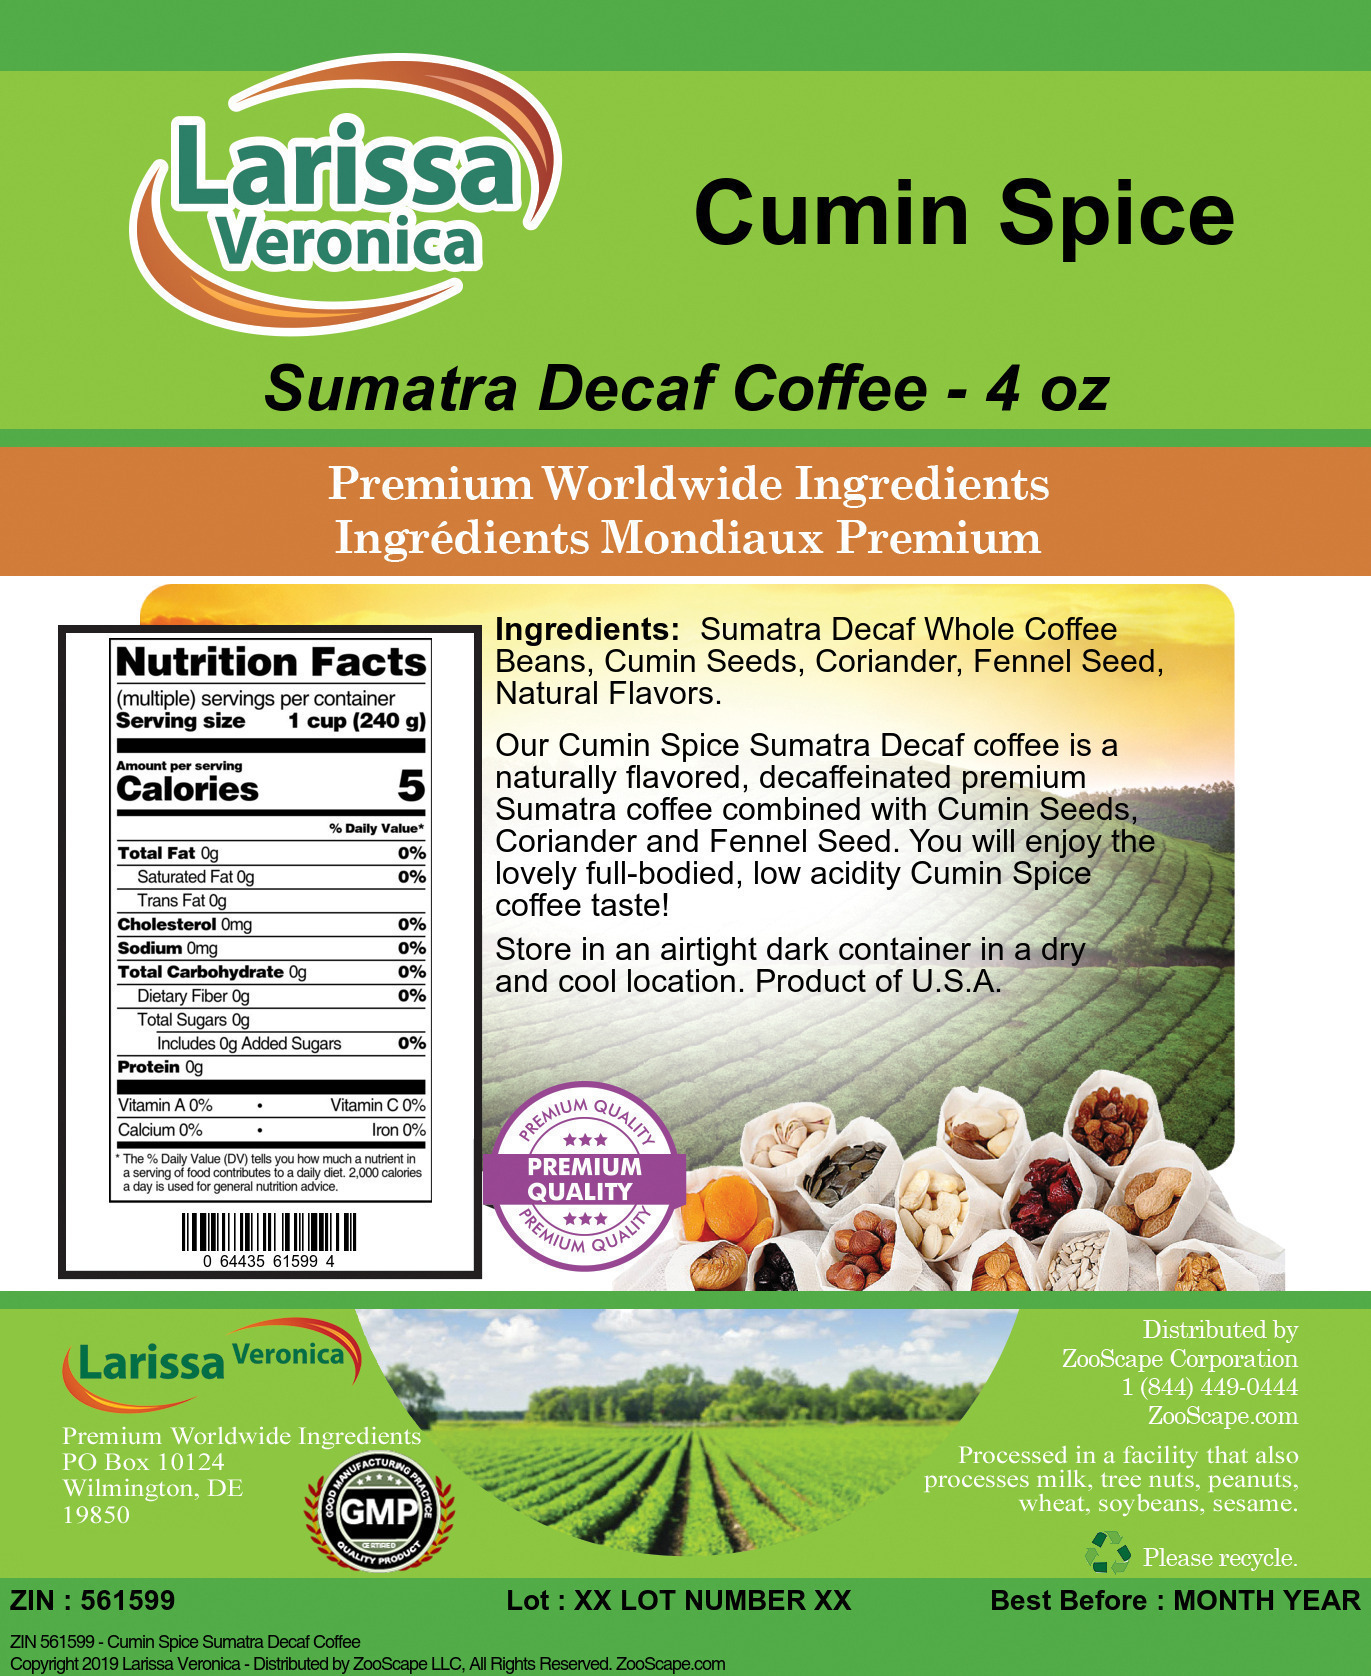 Cumin Spice Sumatra Decaf Coffee - Label